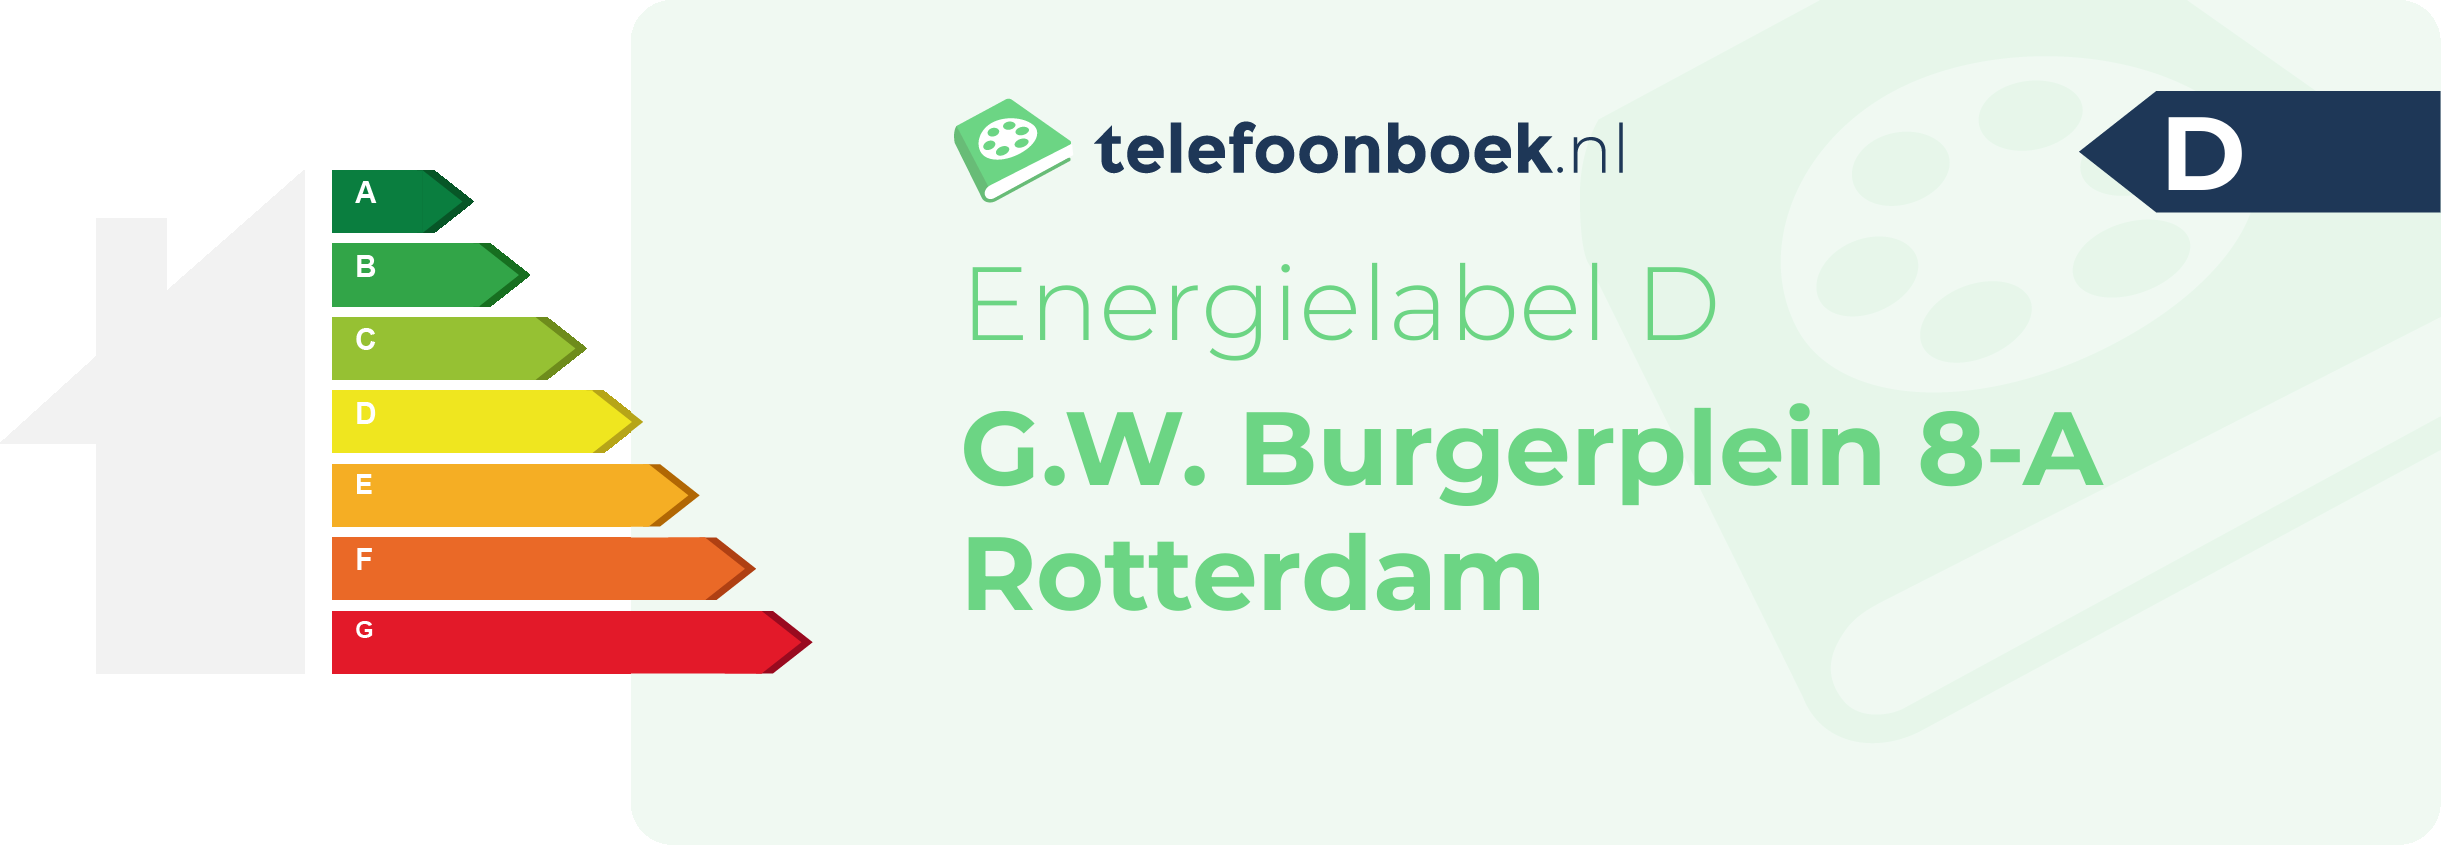 Energielabel G.W. Burgerplein 8-A Rotterdam